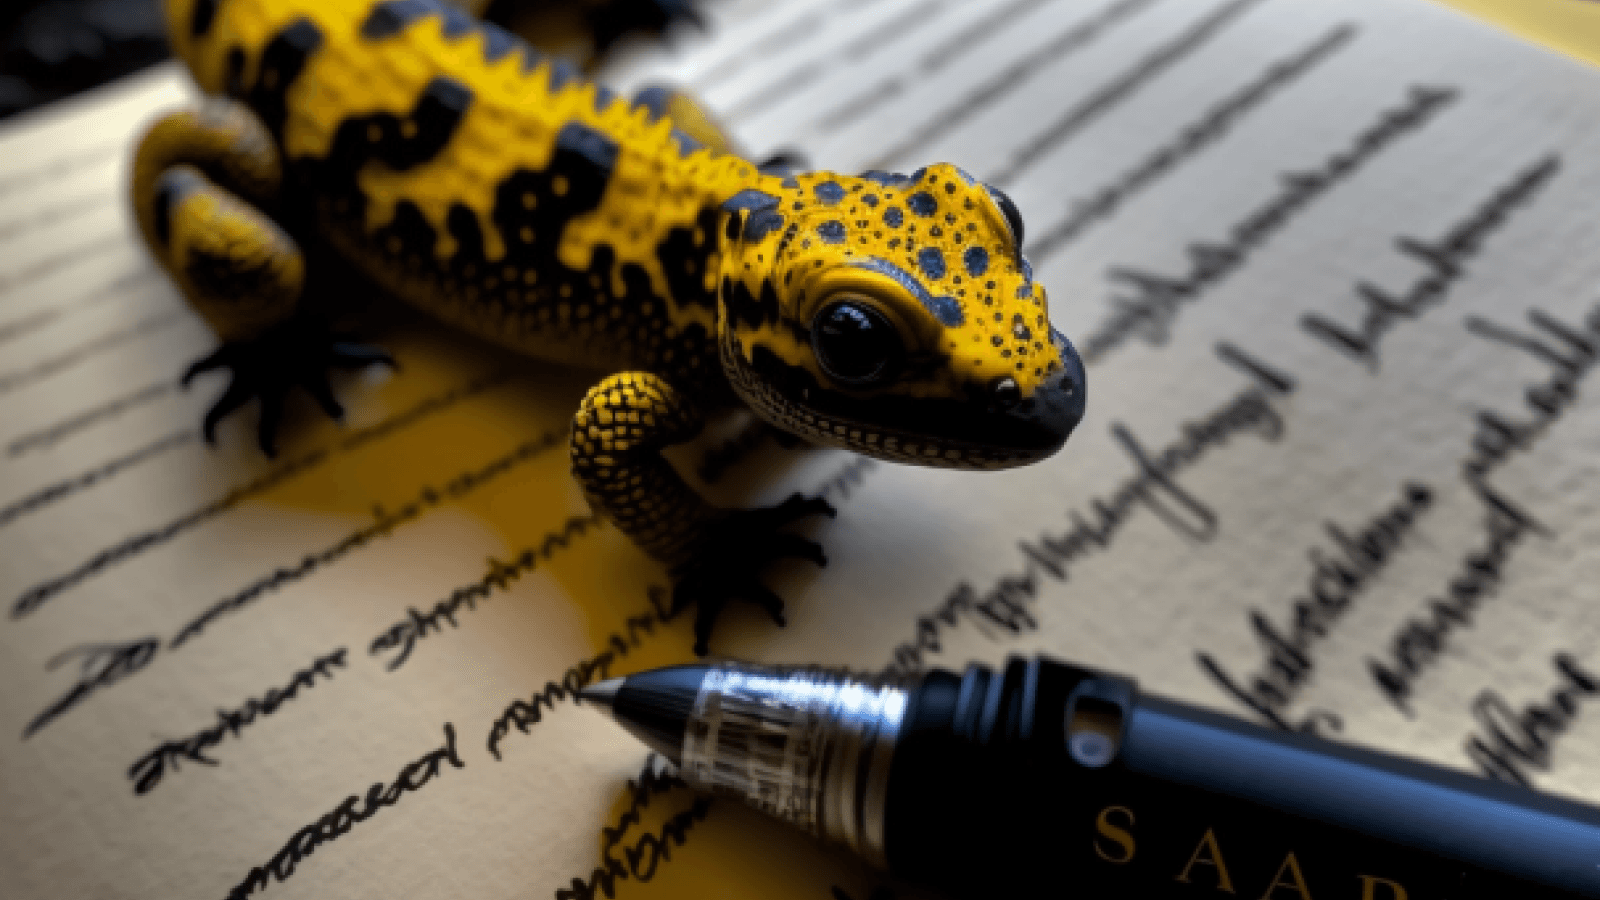 salamandra writes a text